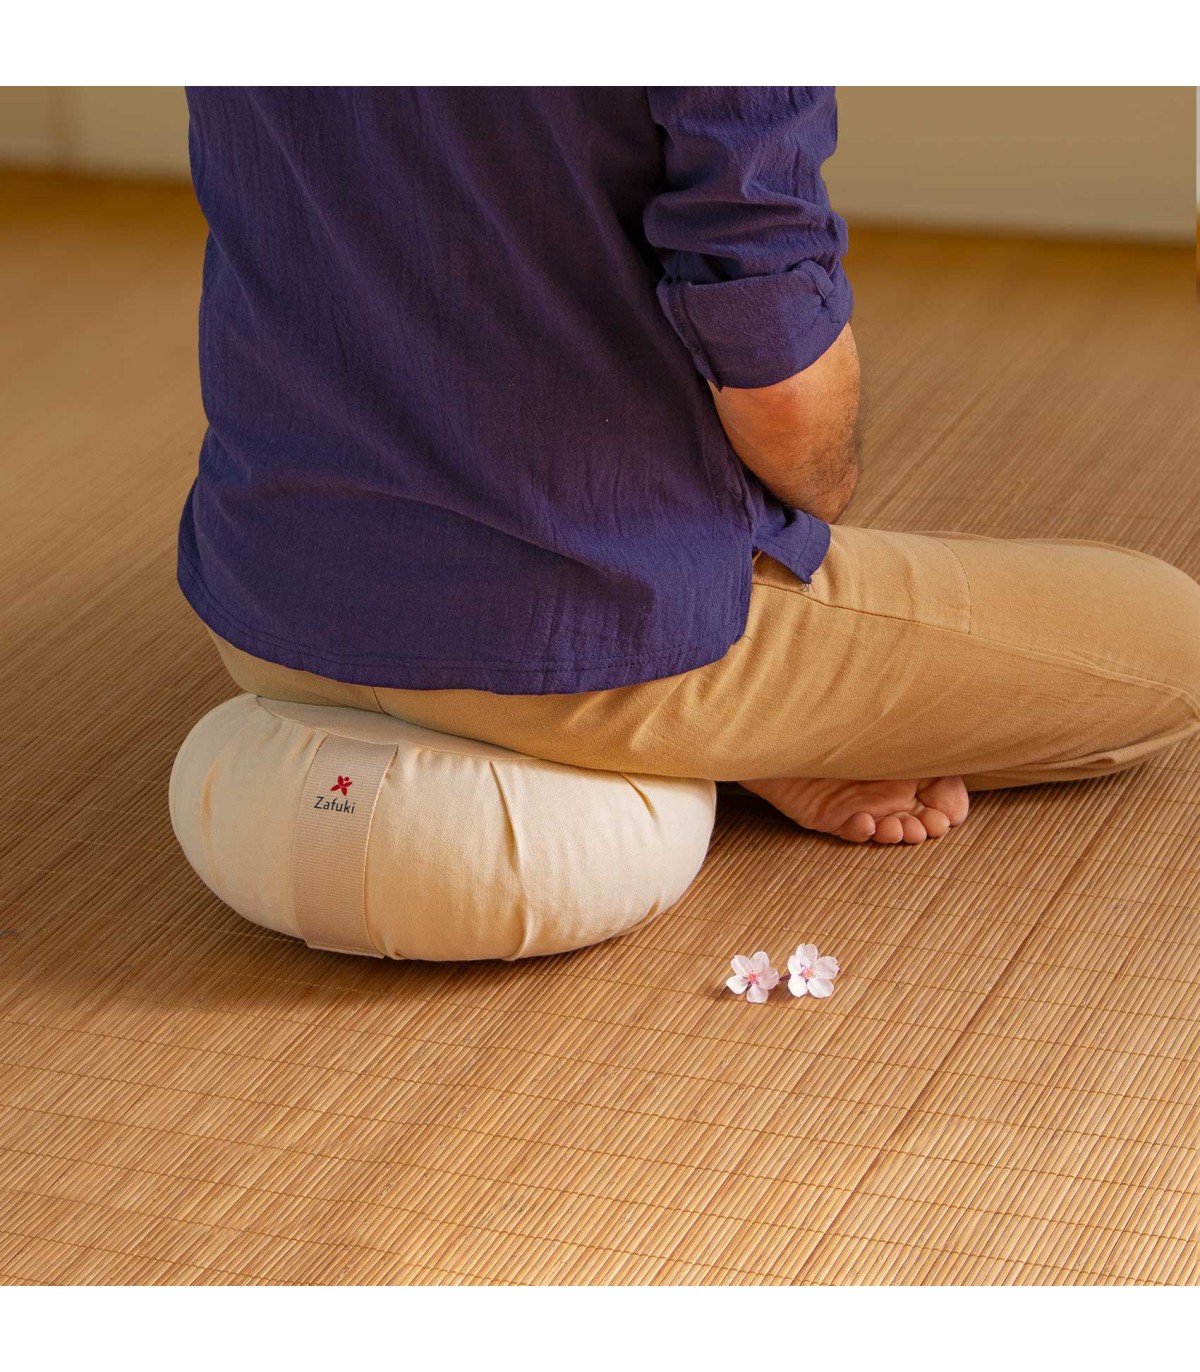 Zafu meditación redondo Basic compacto - COLORFUL, cojín yoga